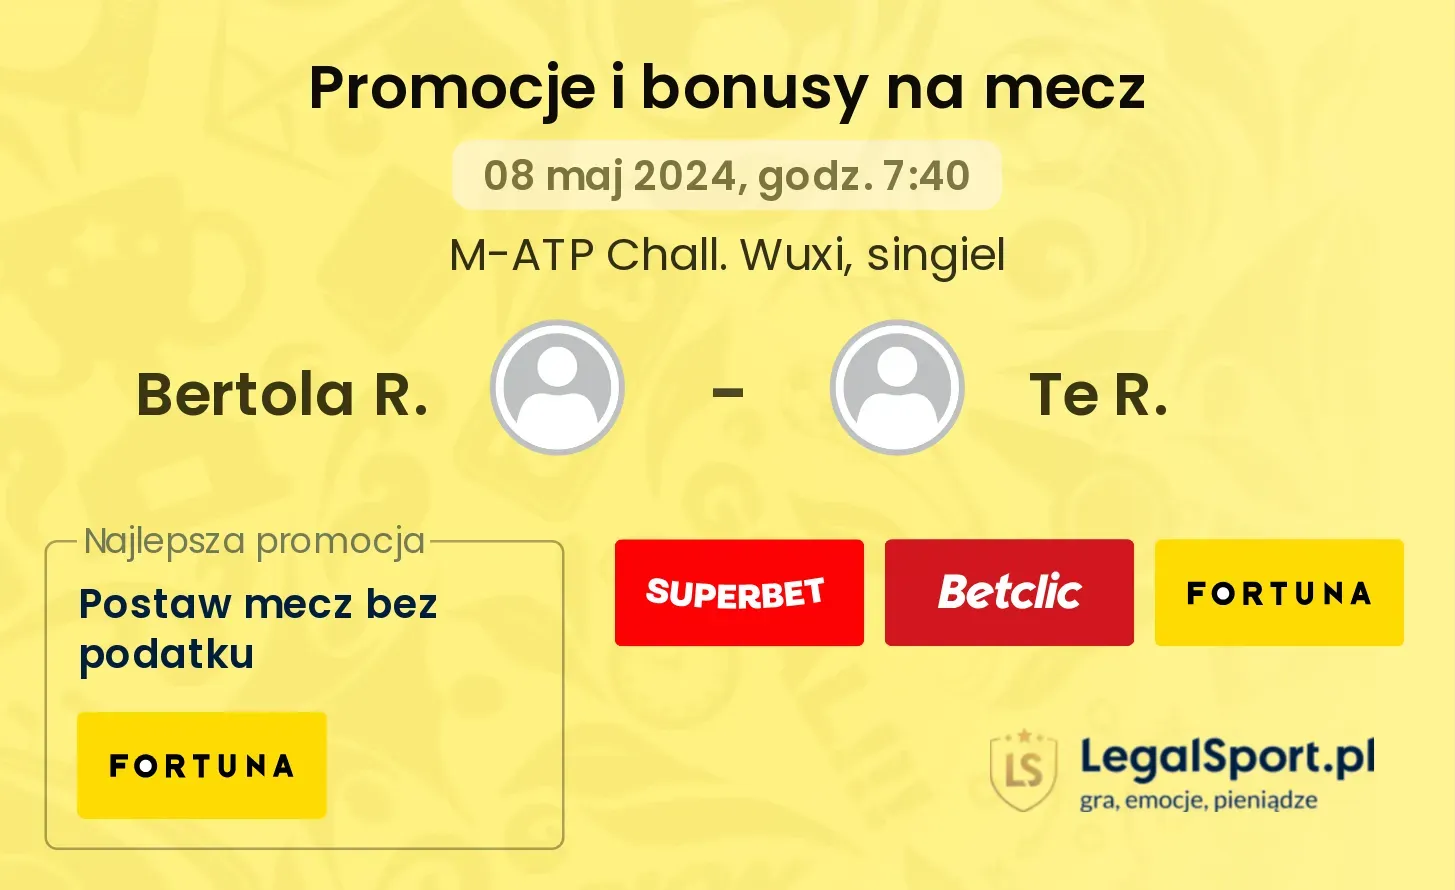 Bertola R. - Te R. promocje bonusy na mecz